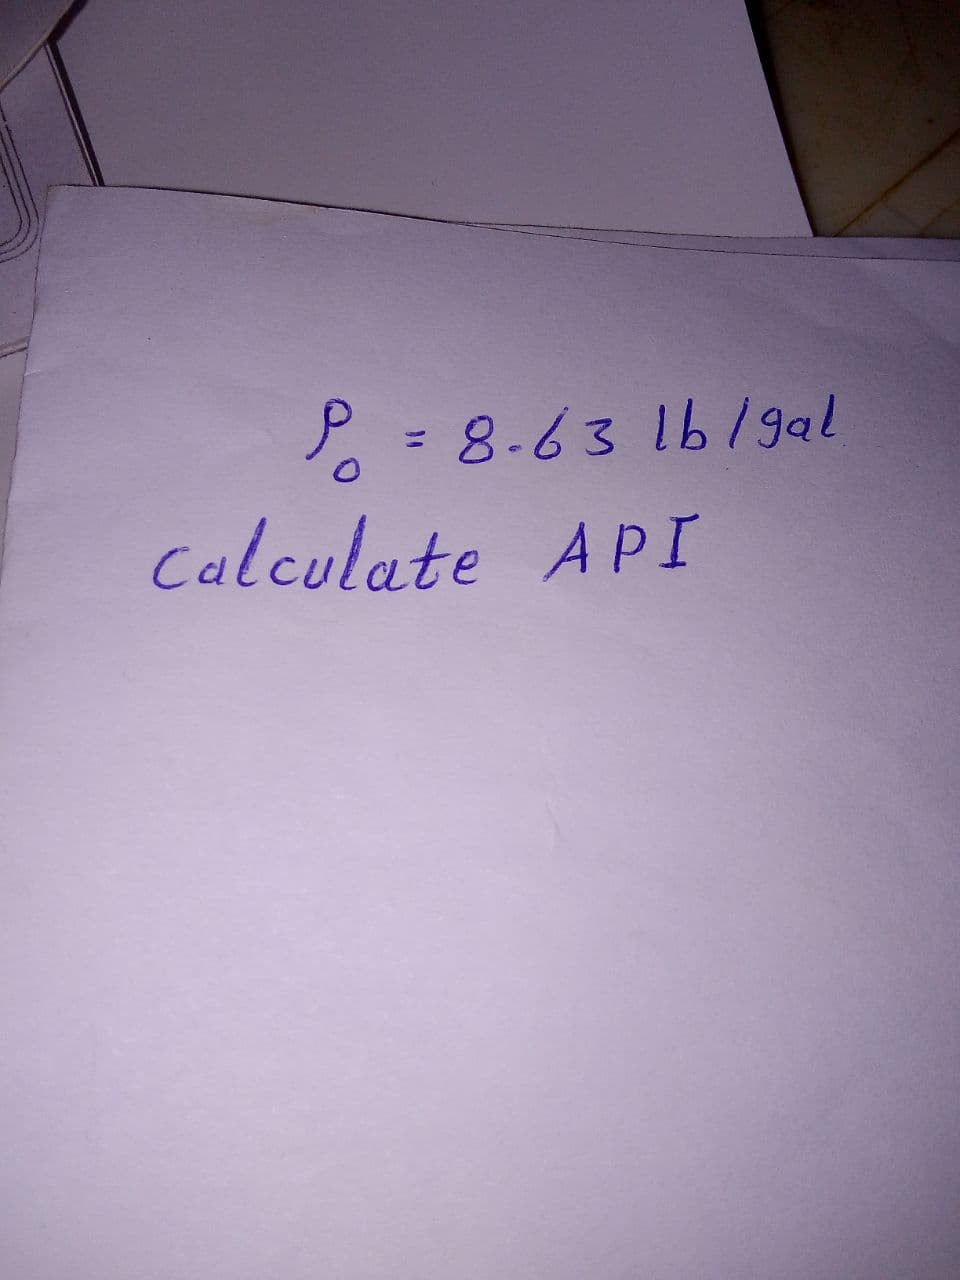 P = 8-63 1b/gal
%3D
Calculate API
